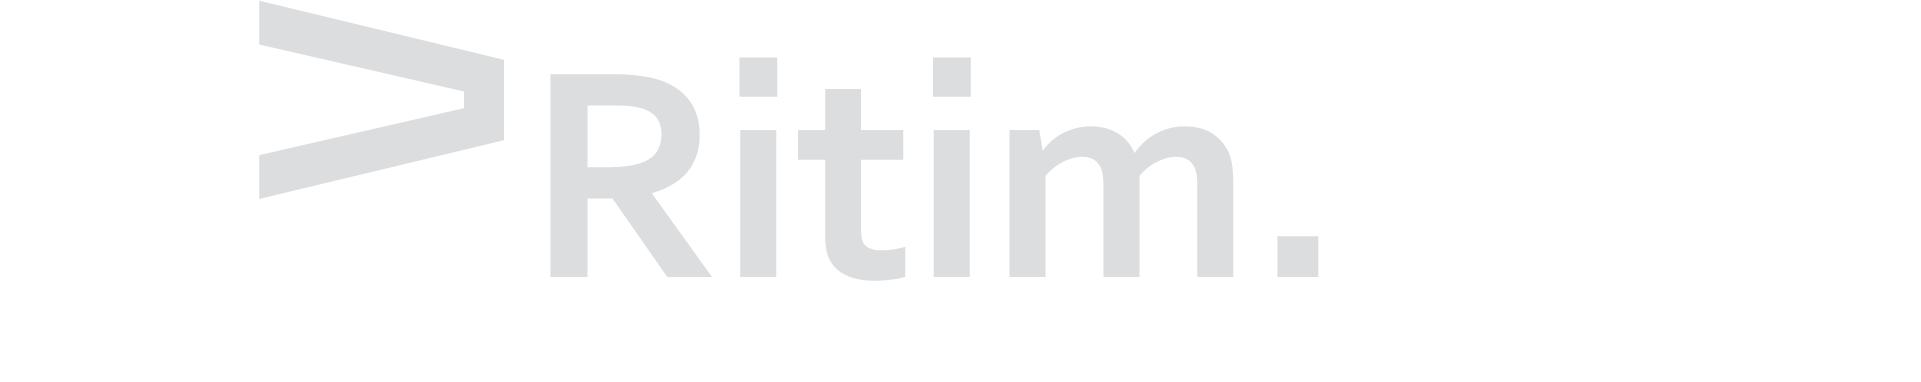 Ritimsoft Yazılım Mühendisliği